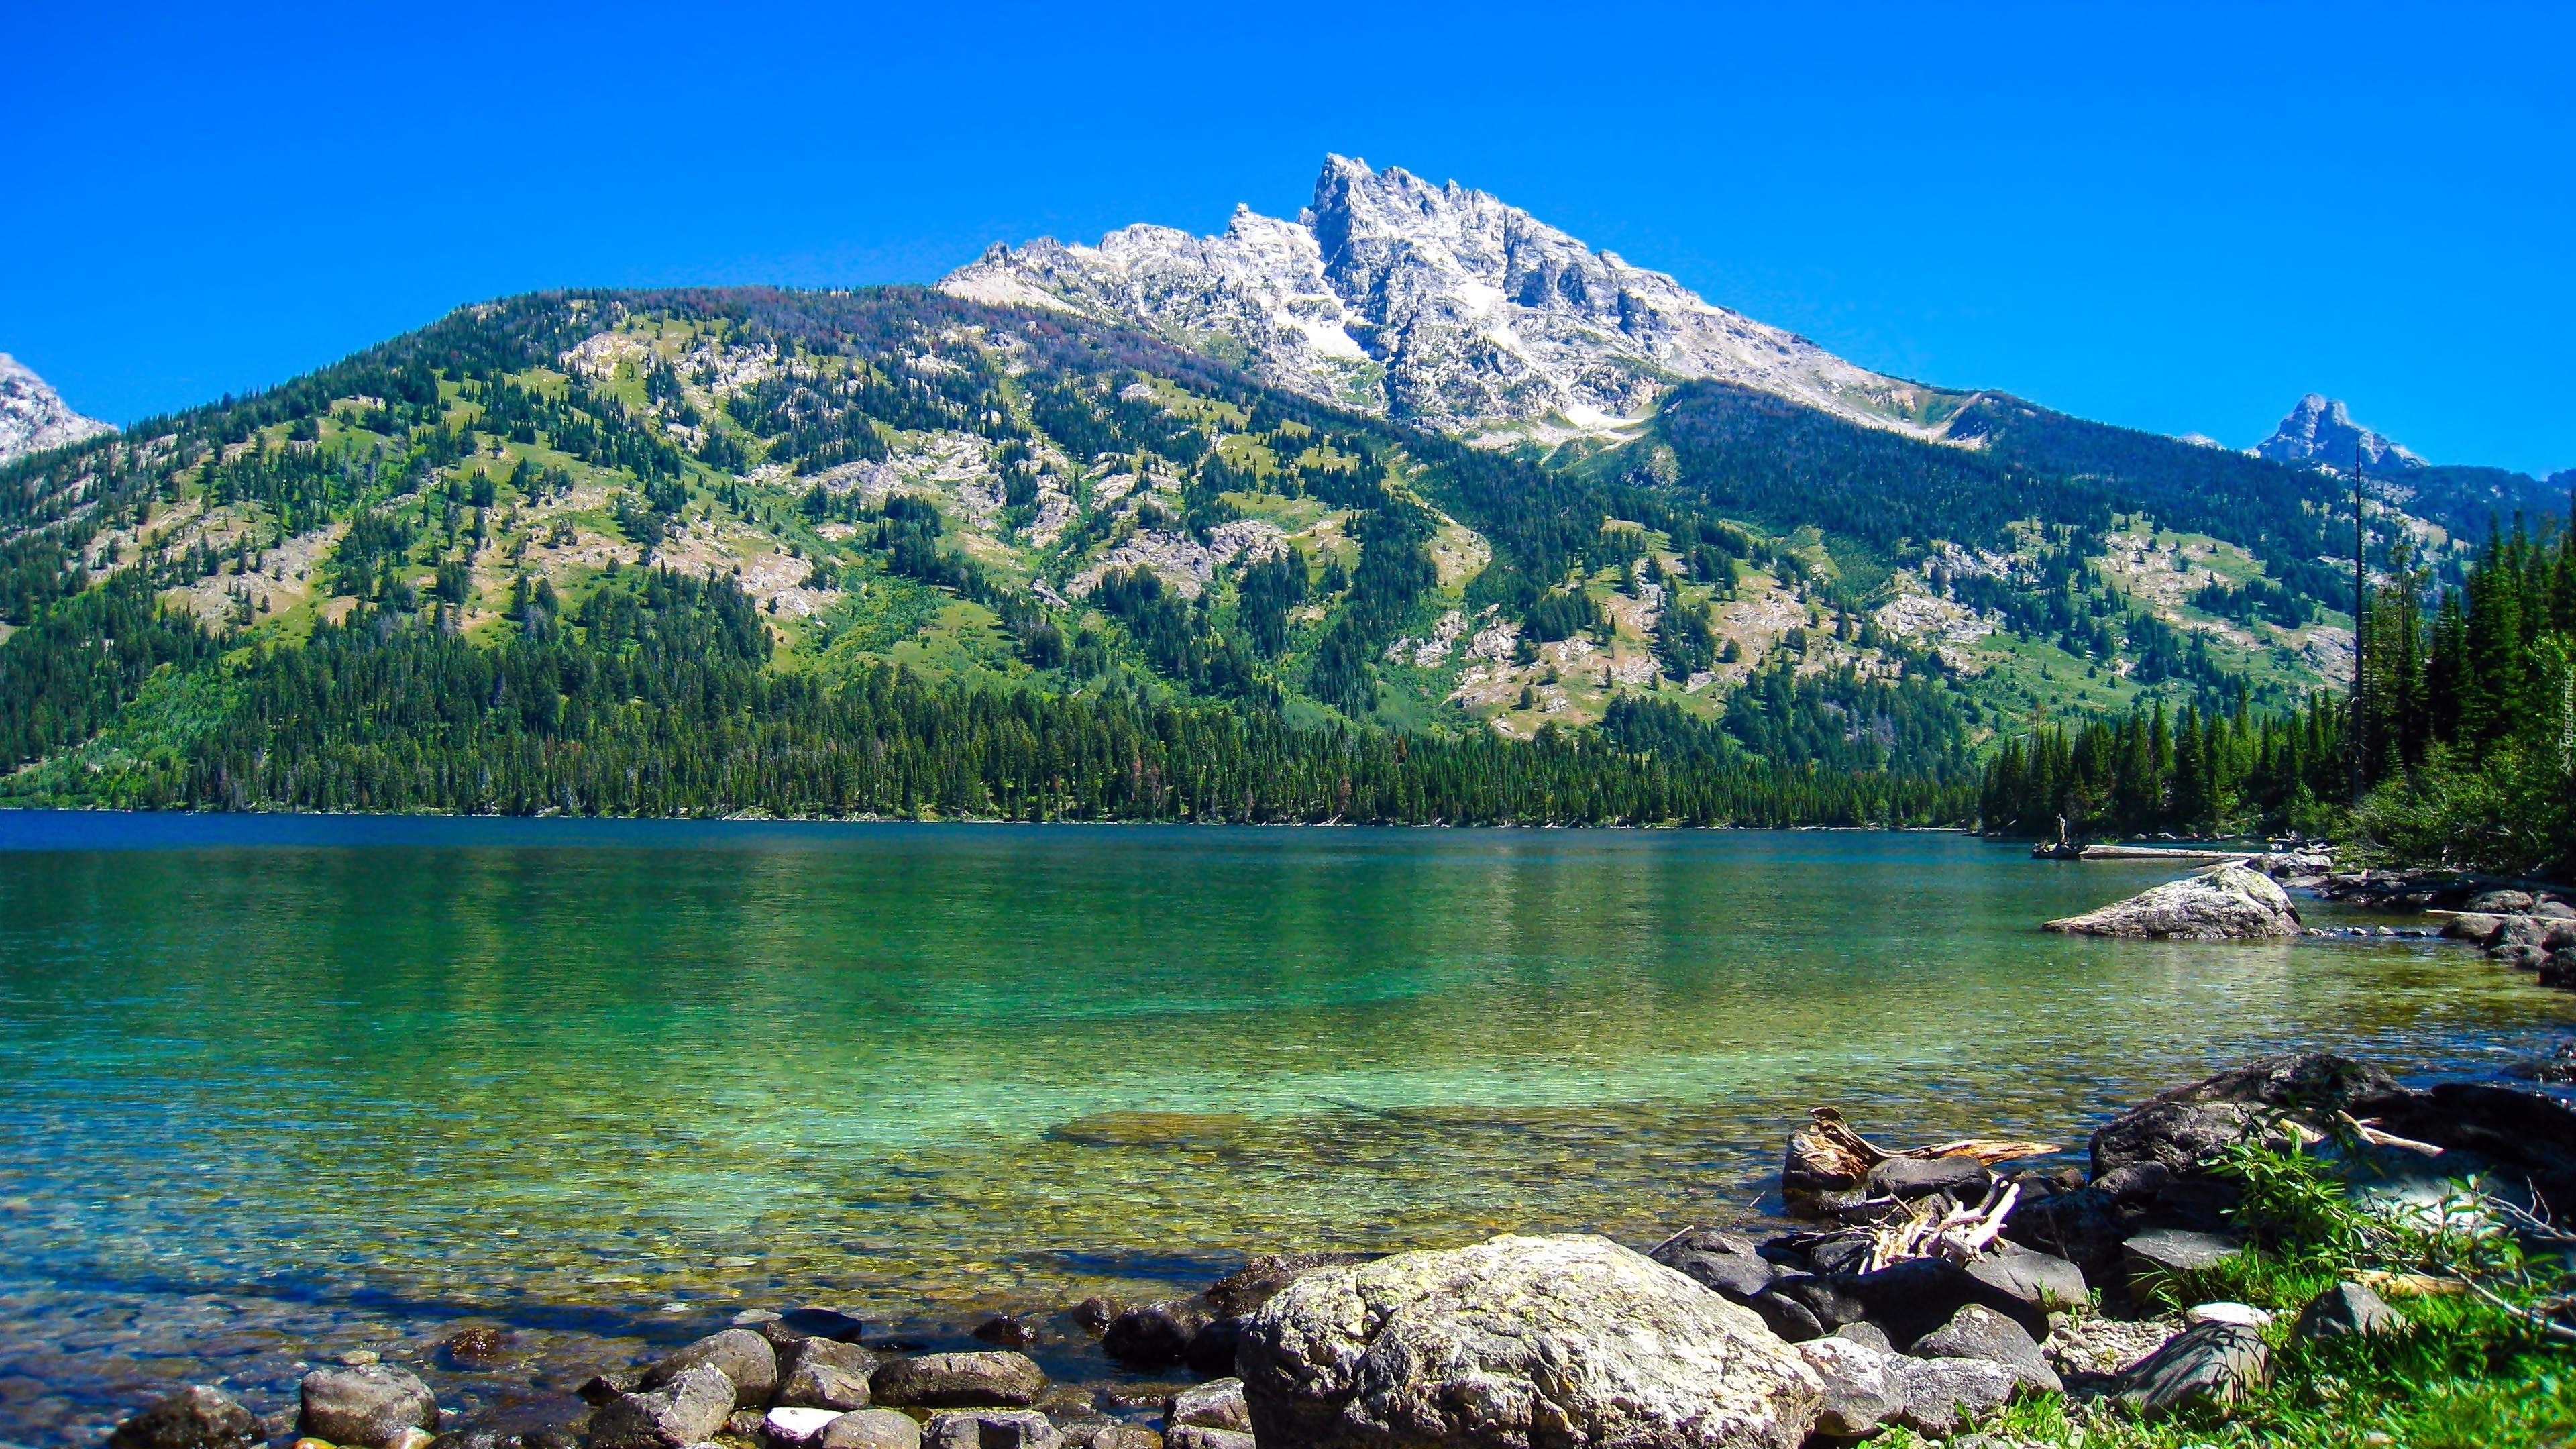 Stany Zjednoczone, Stan Wyoming, Park Narodowy Grand Teton, Góry Teewinot Mountain, Jezioro Jenny Lake, Kamienie